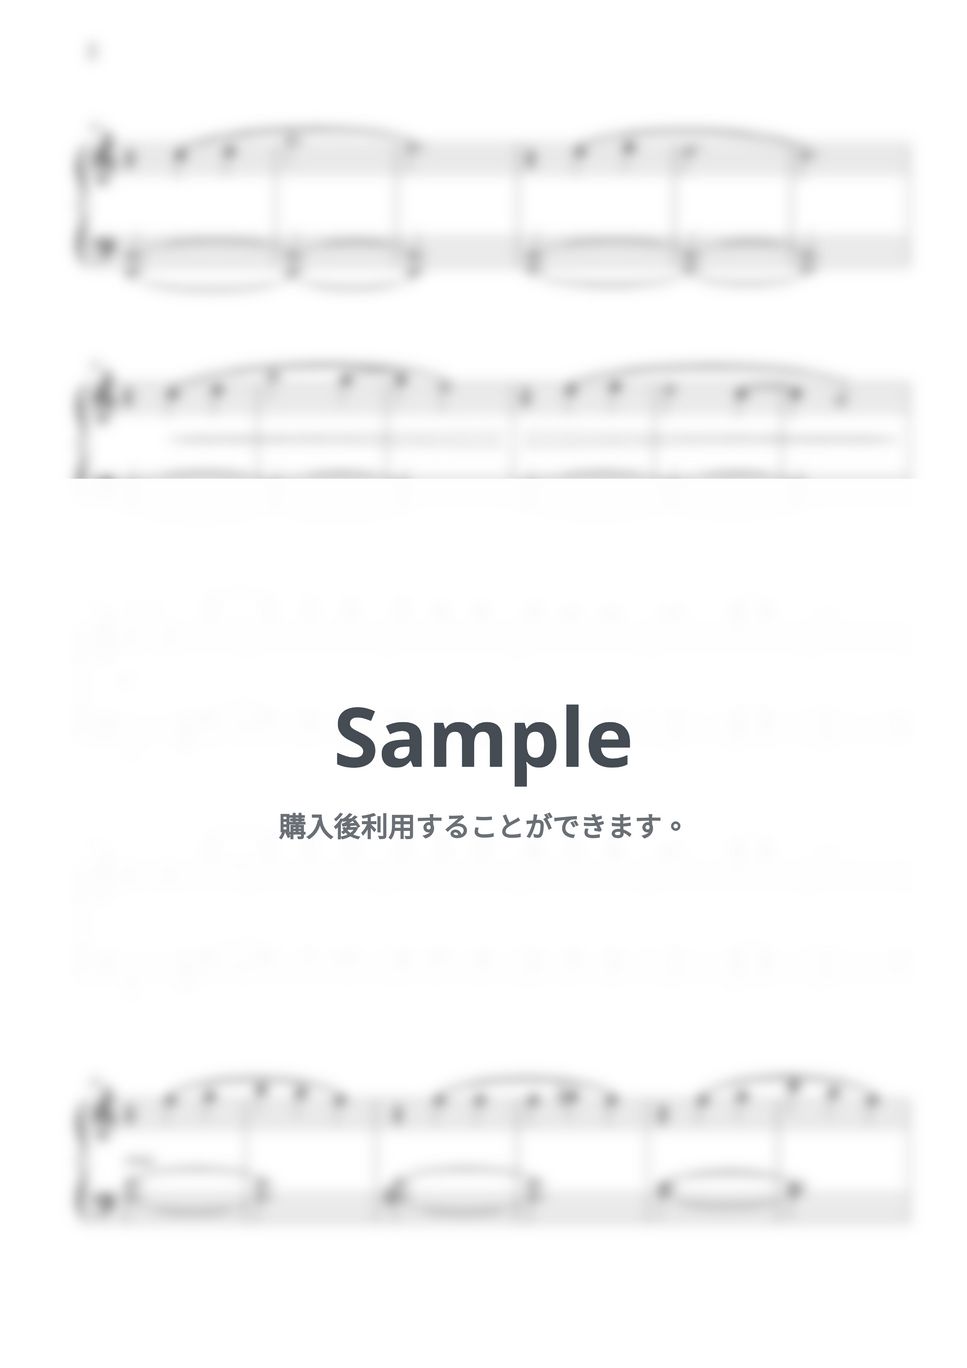 ドビュッシー - 月光 (初級バージョン) by THIS IS PIANO